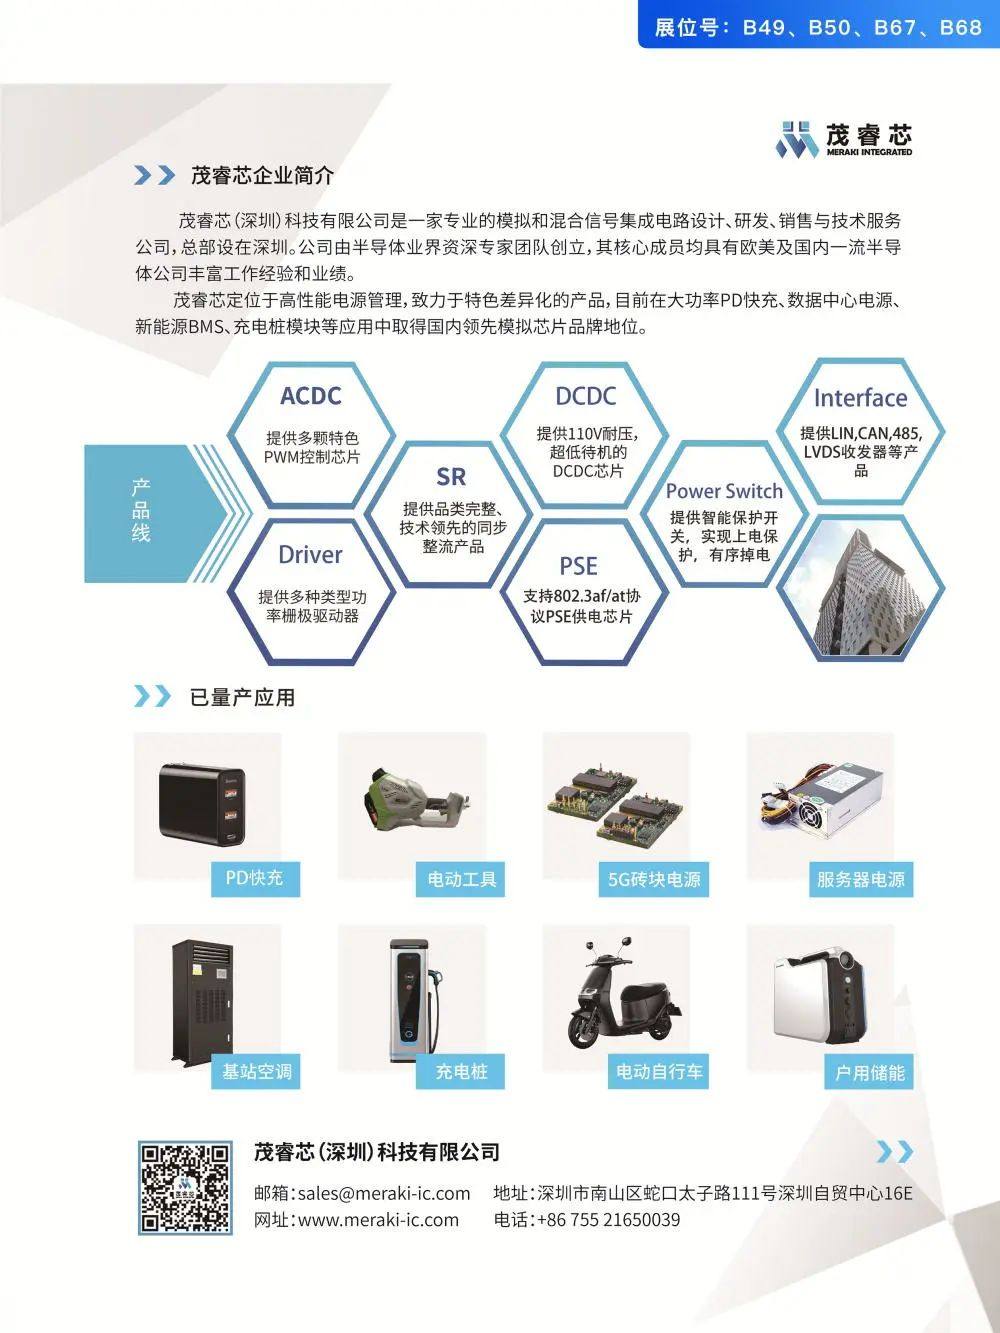 39家电源芯片企业参加2022亚洲充电展-充电头网